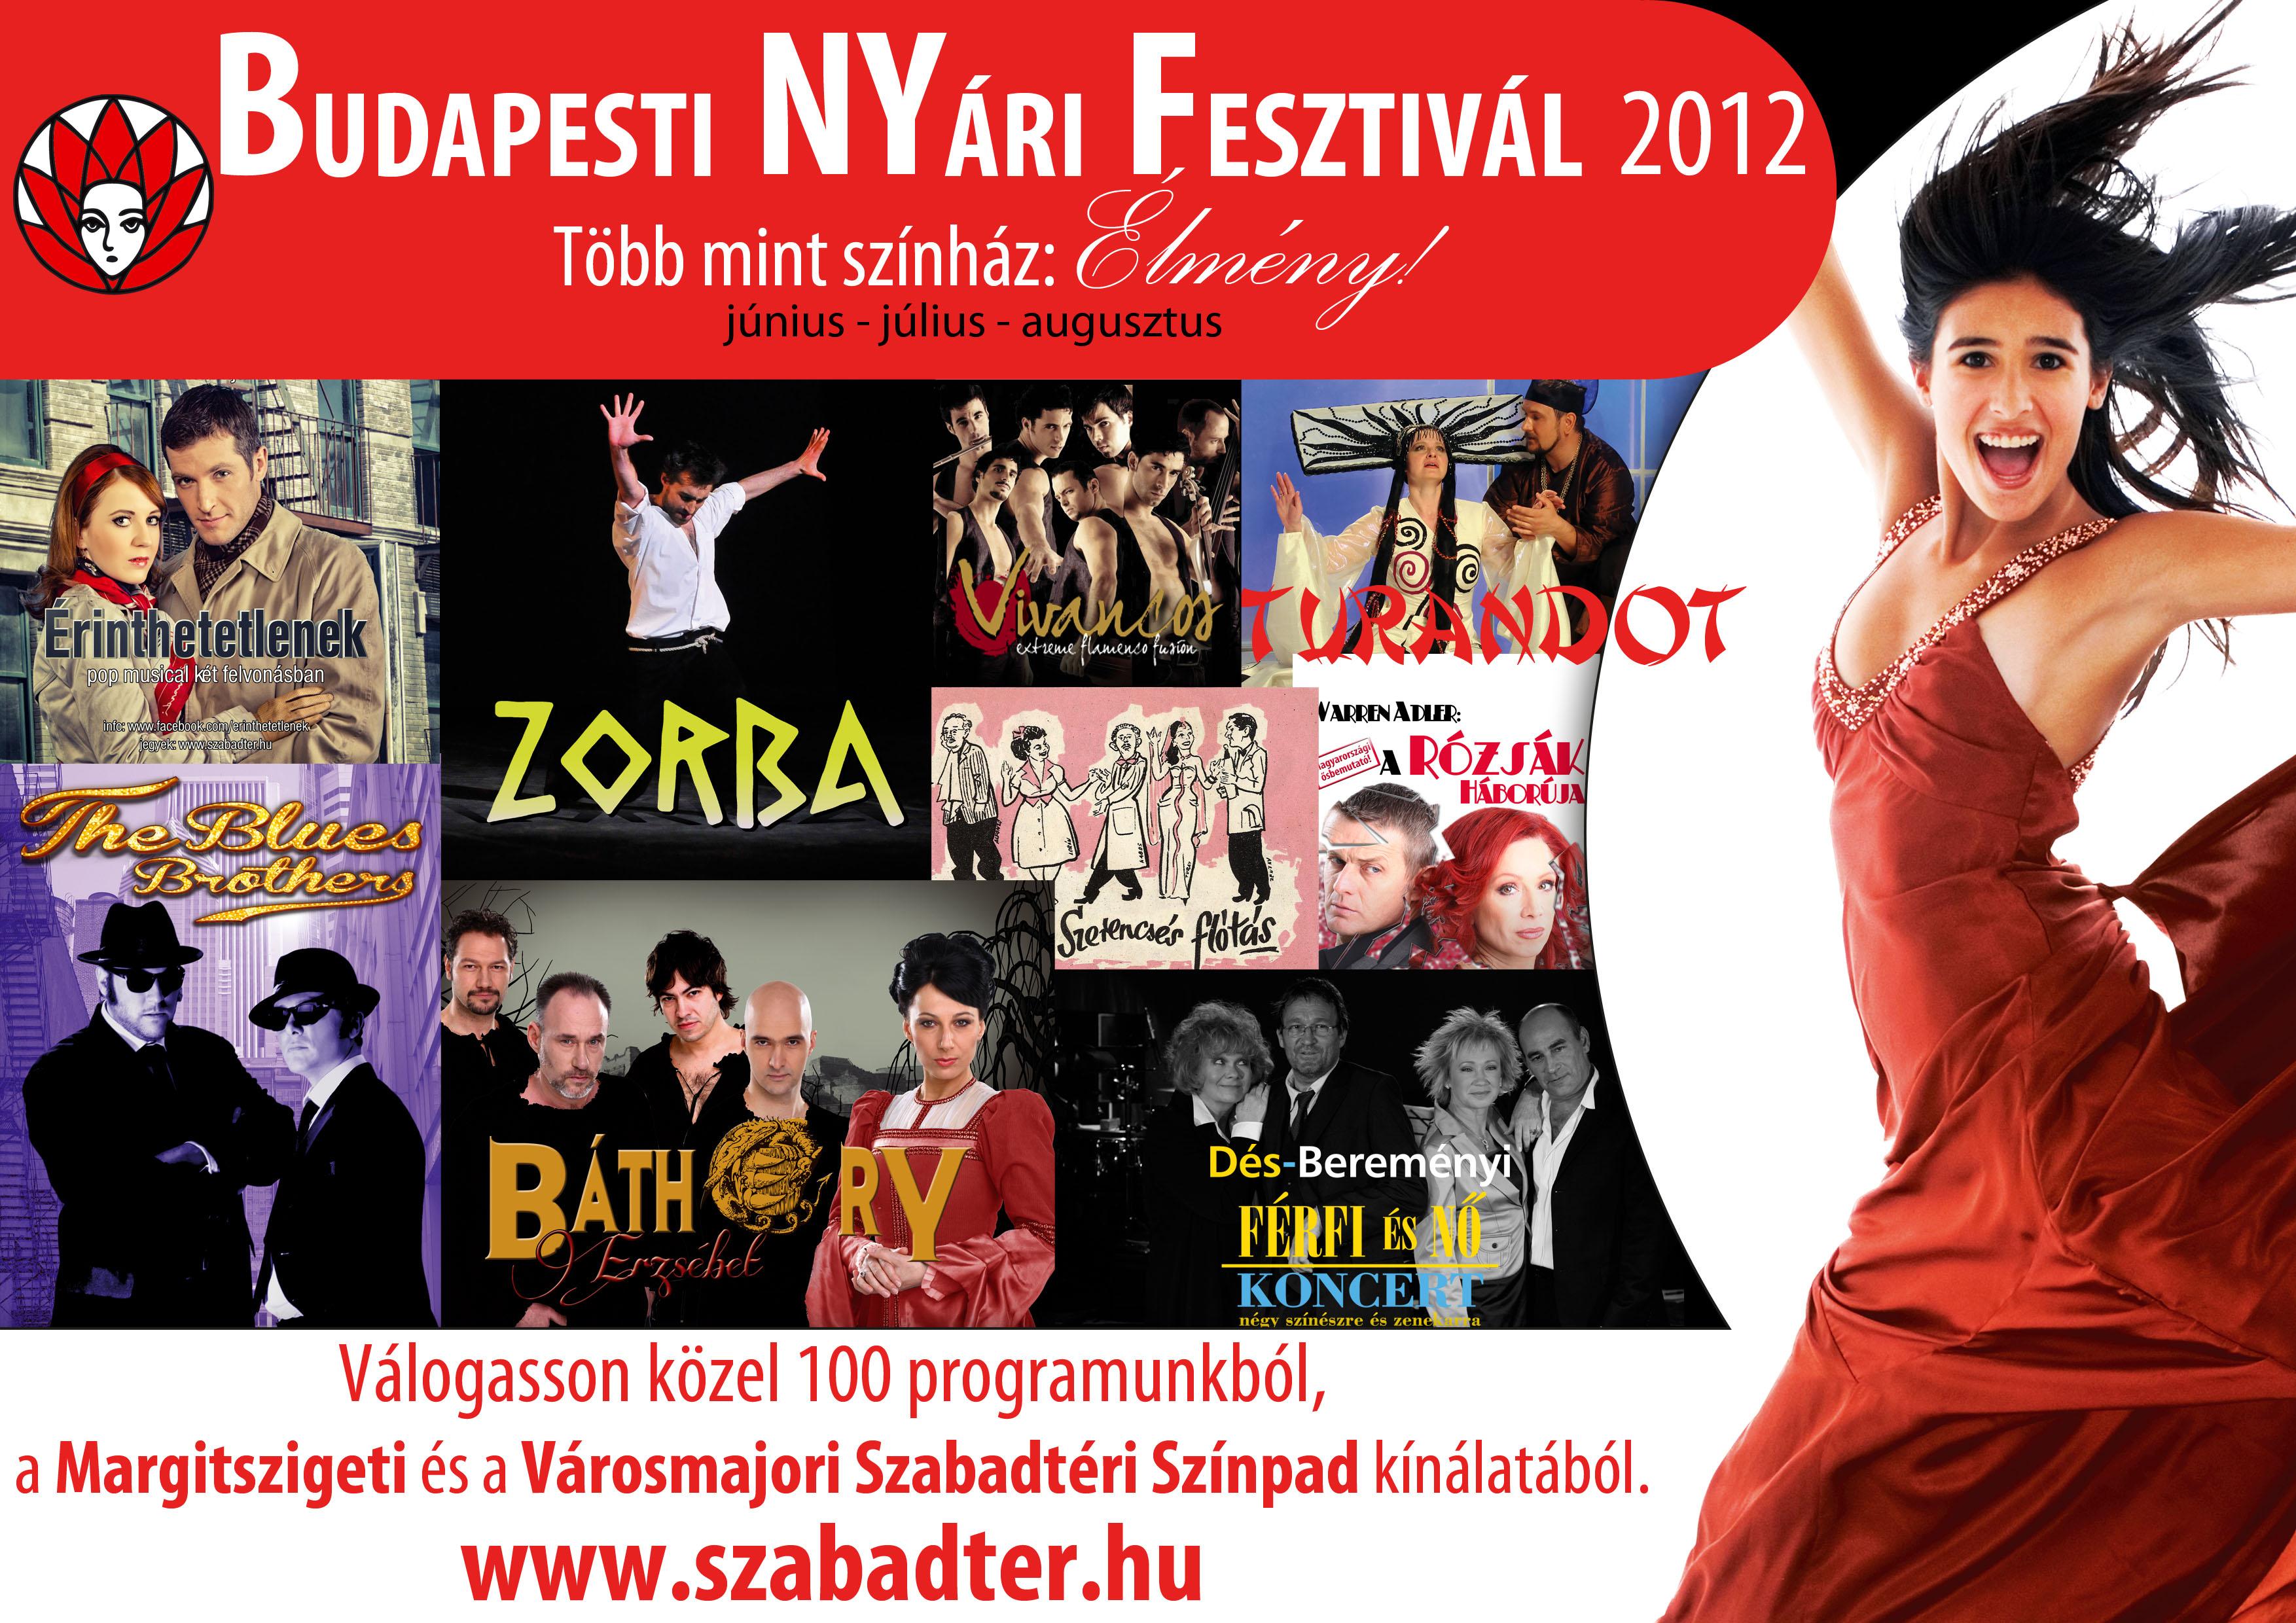 Budapest Summer Festival 2012